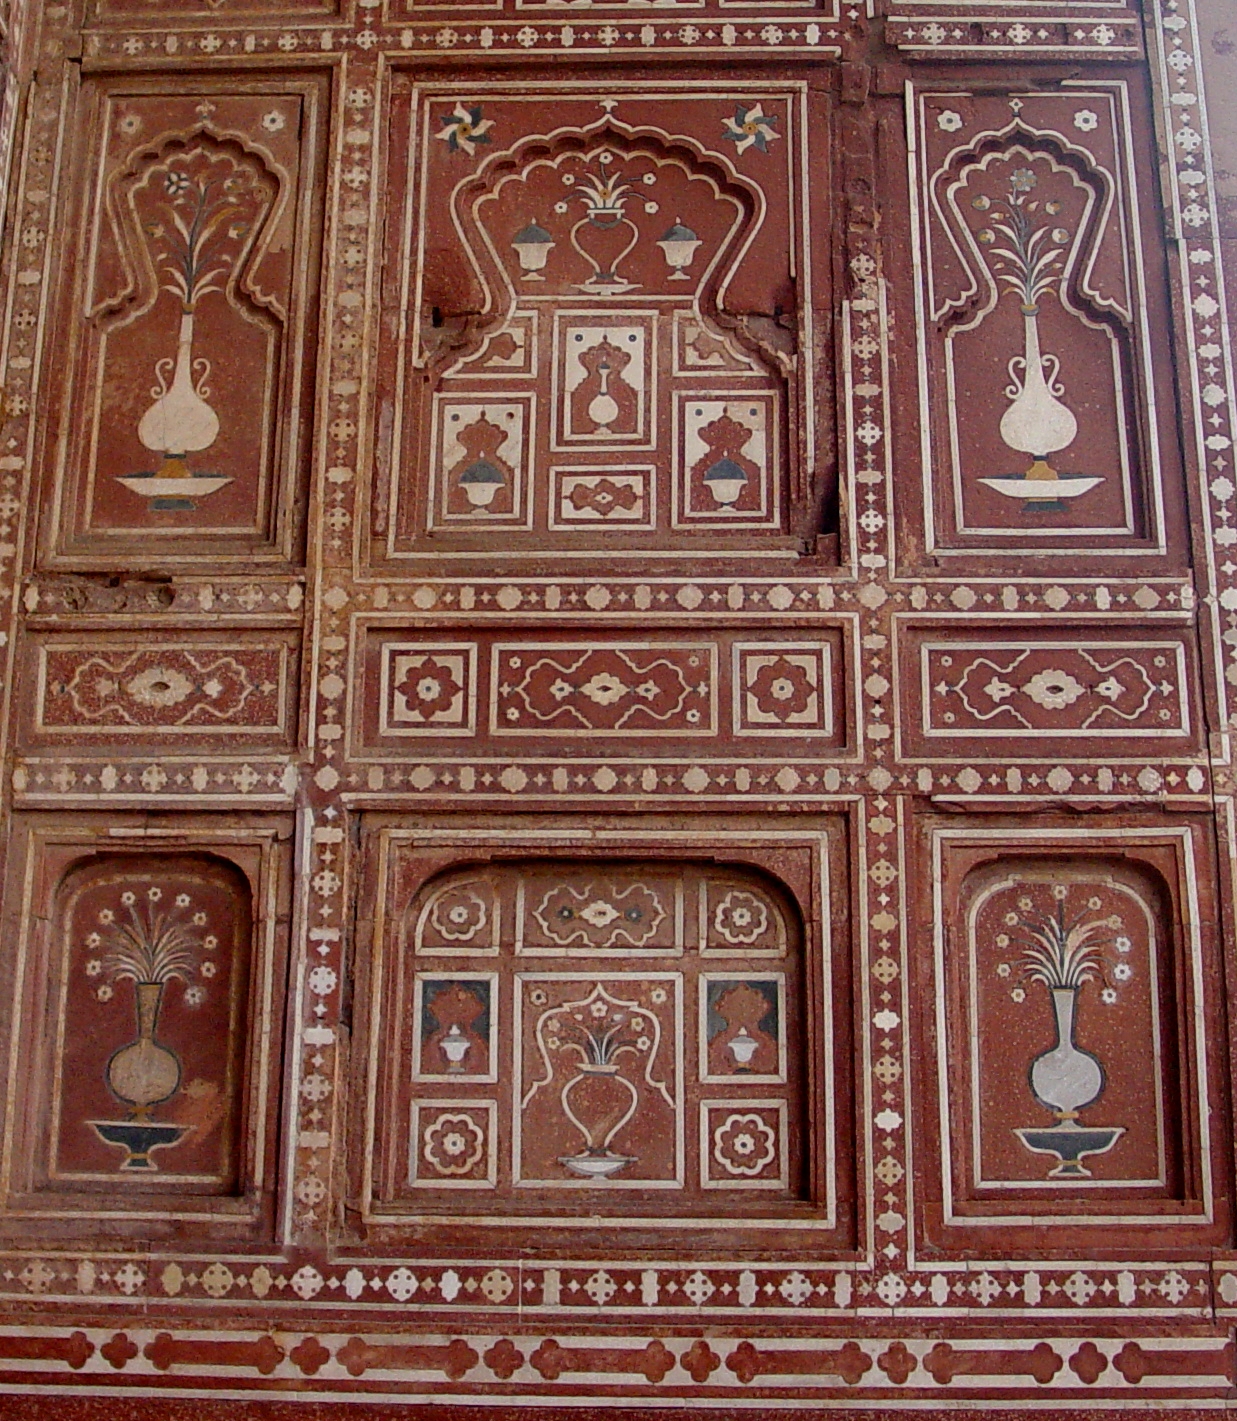 Badshahi Mosque wall facade detail